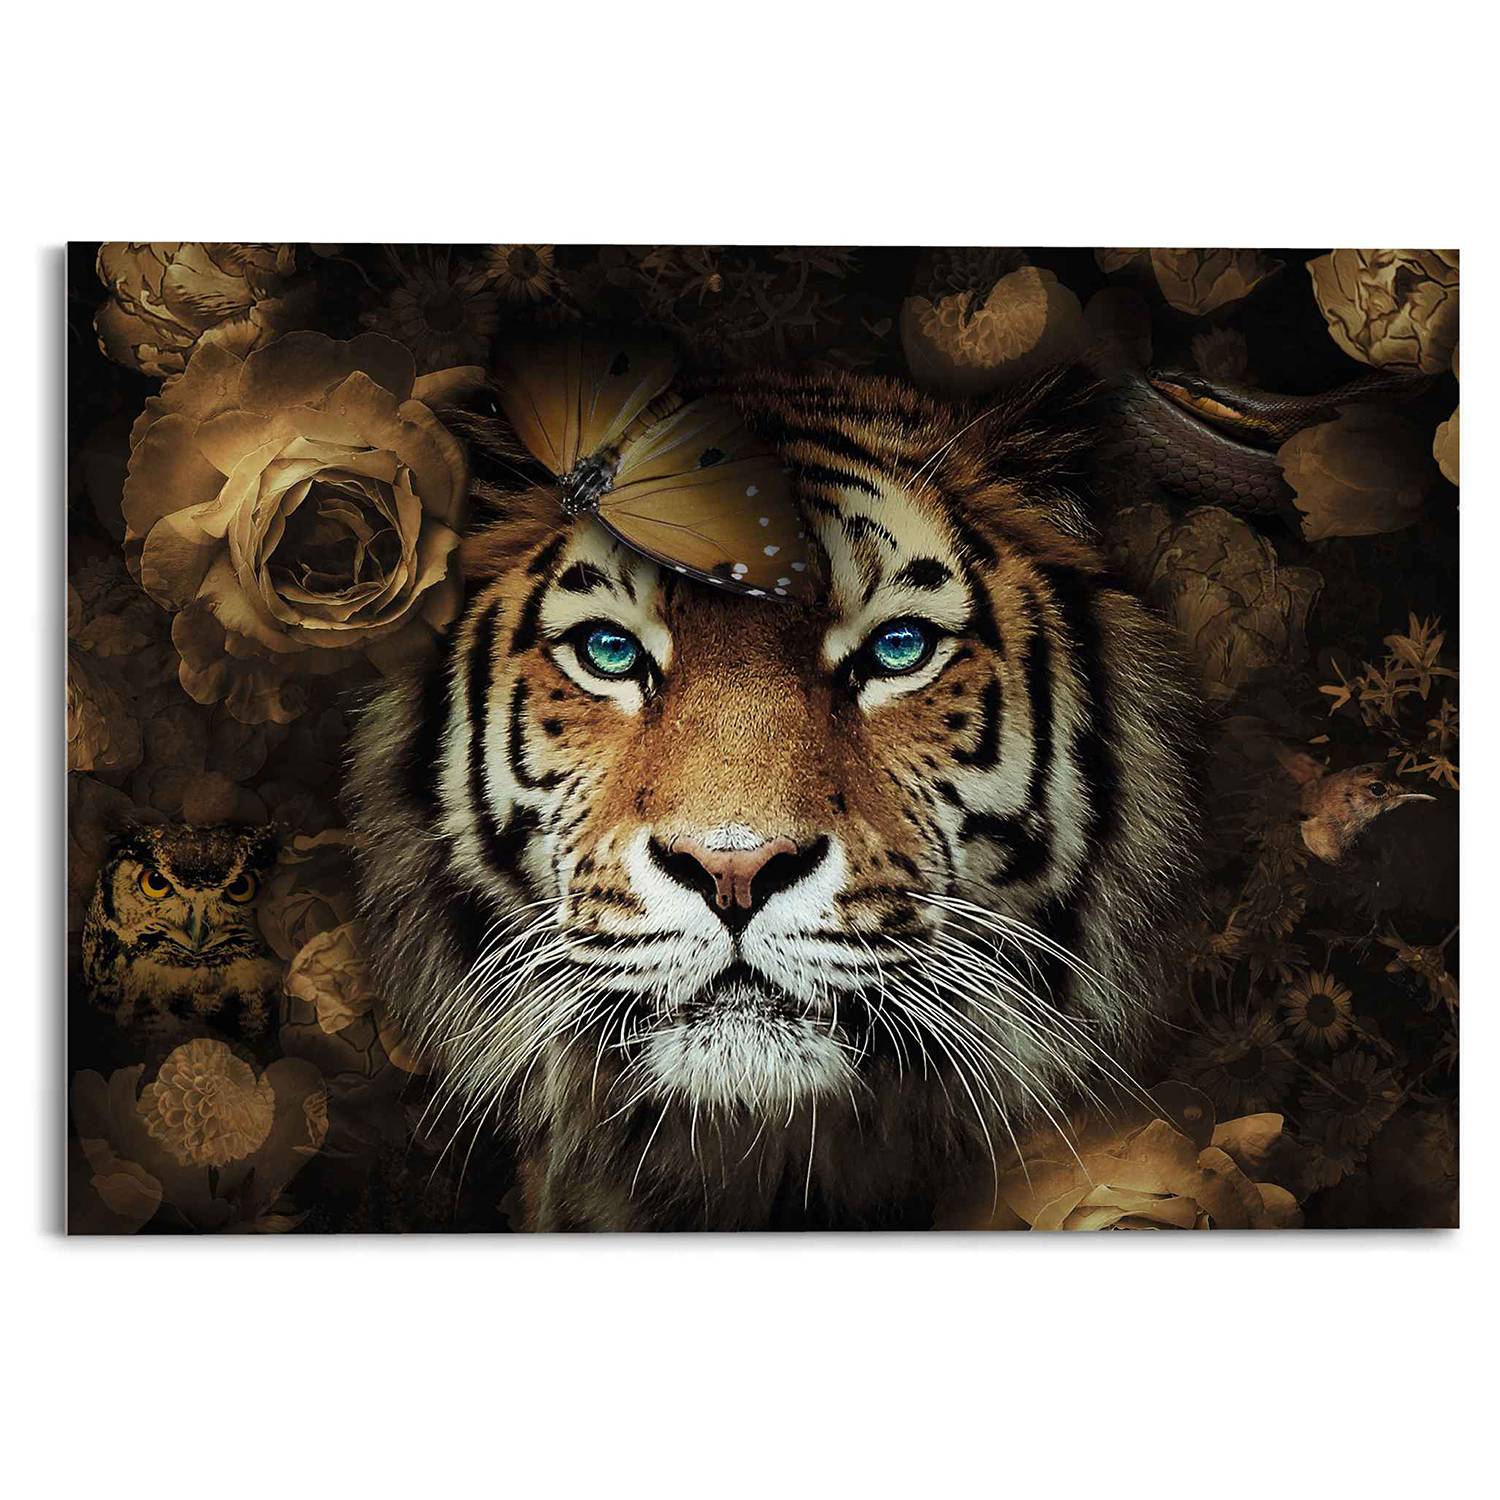 Glasbild Tiger Tierreich kaufen | home24